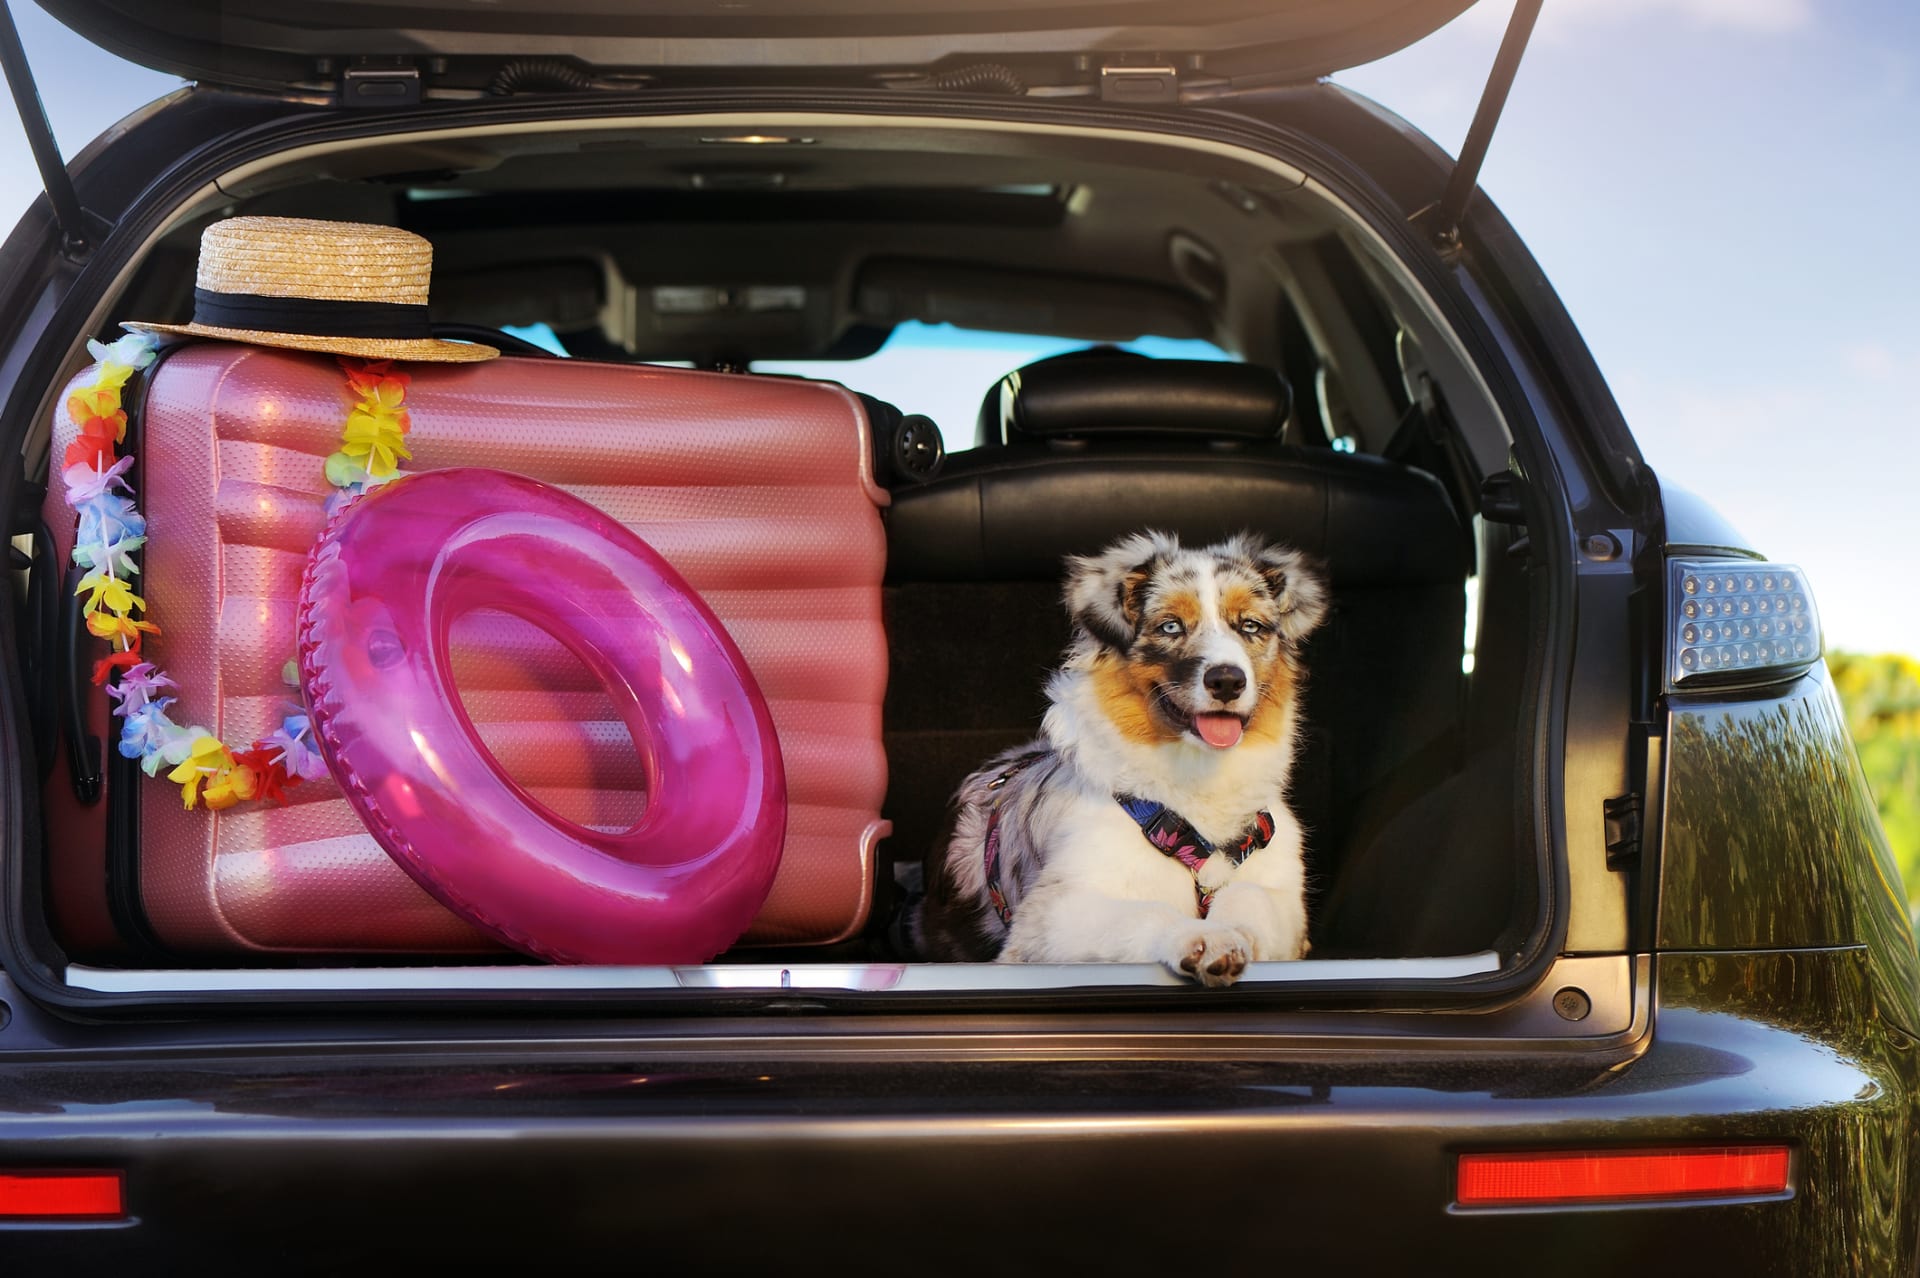 Většina psů se preventivně sama naloží do auta, jen co otevřete dveře